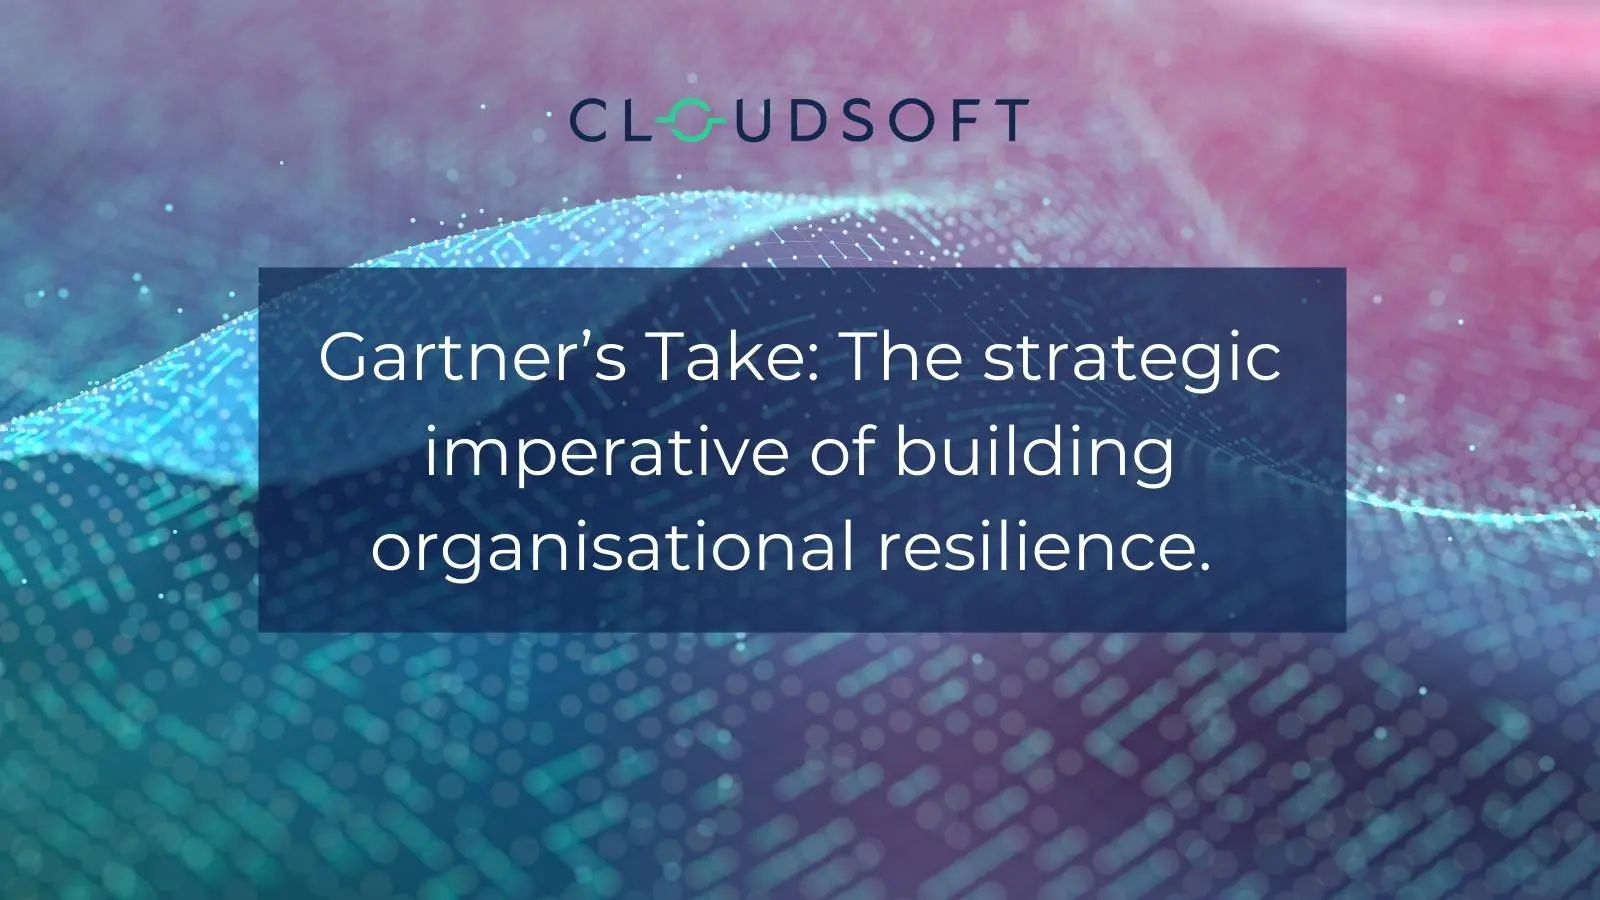 Gartner Building organisational resilience